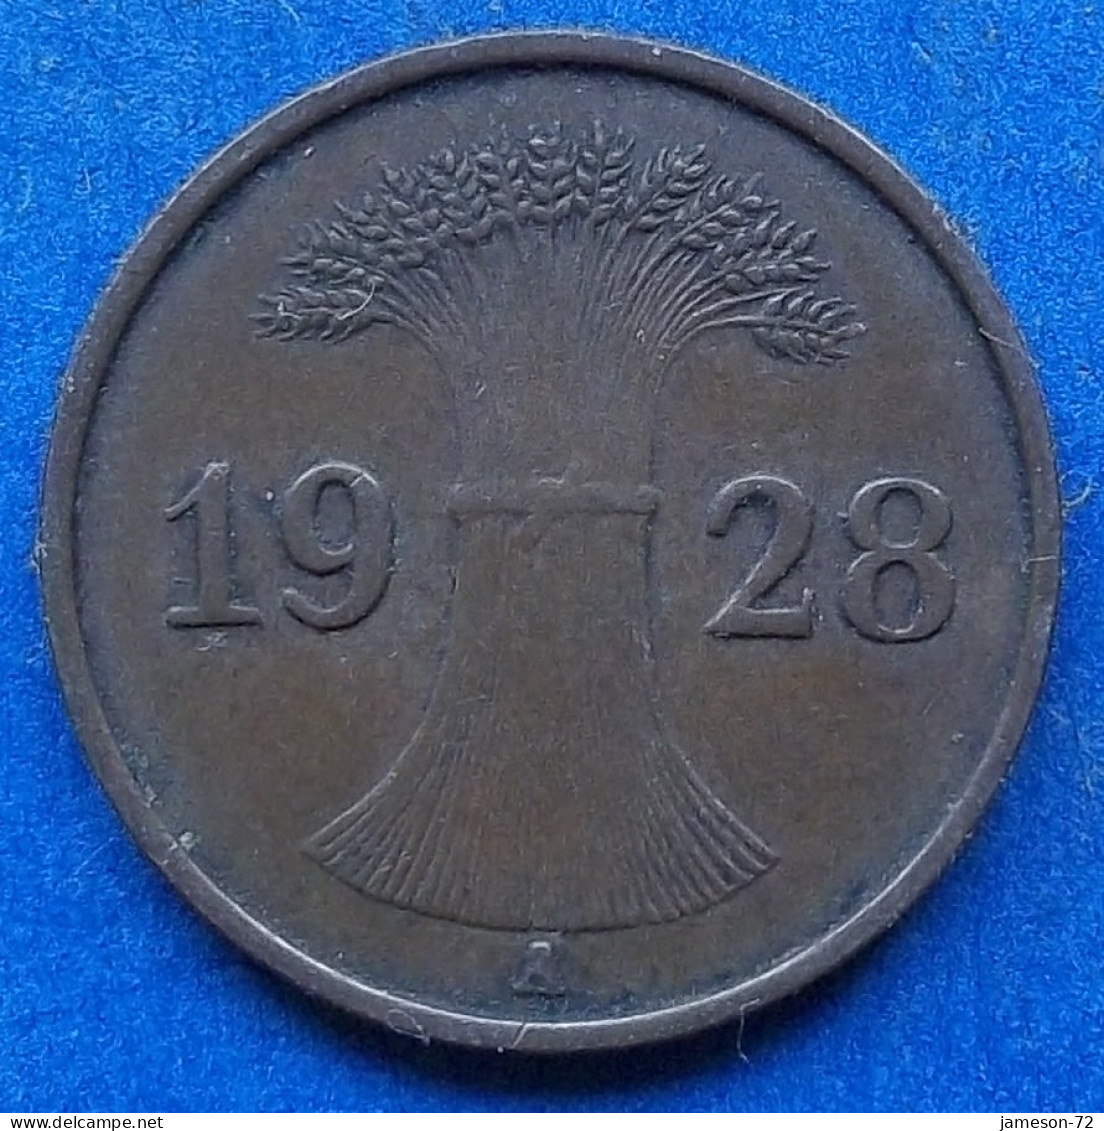 GERMANY - 1 Reichspfennig 1928 A KM# 37 Weimar Republic Reichsmark Coinage (1924-1938) - Edelweiss Coins - 1 Renten- & 1 Reichspfennig